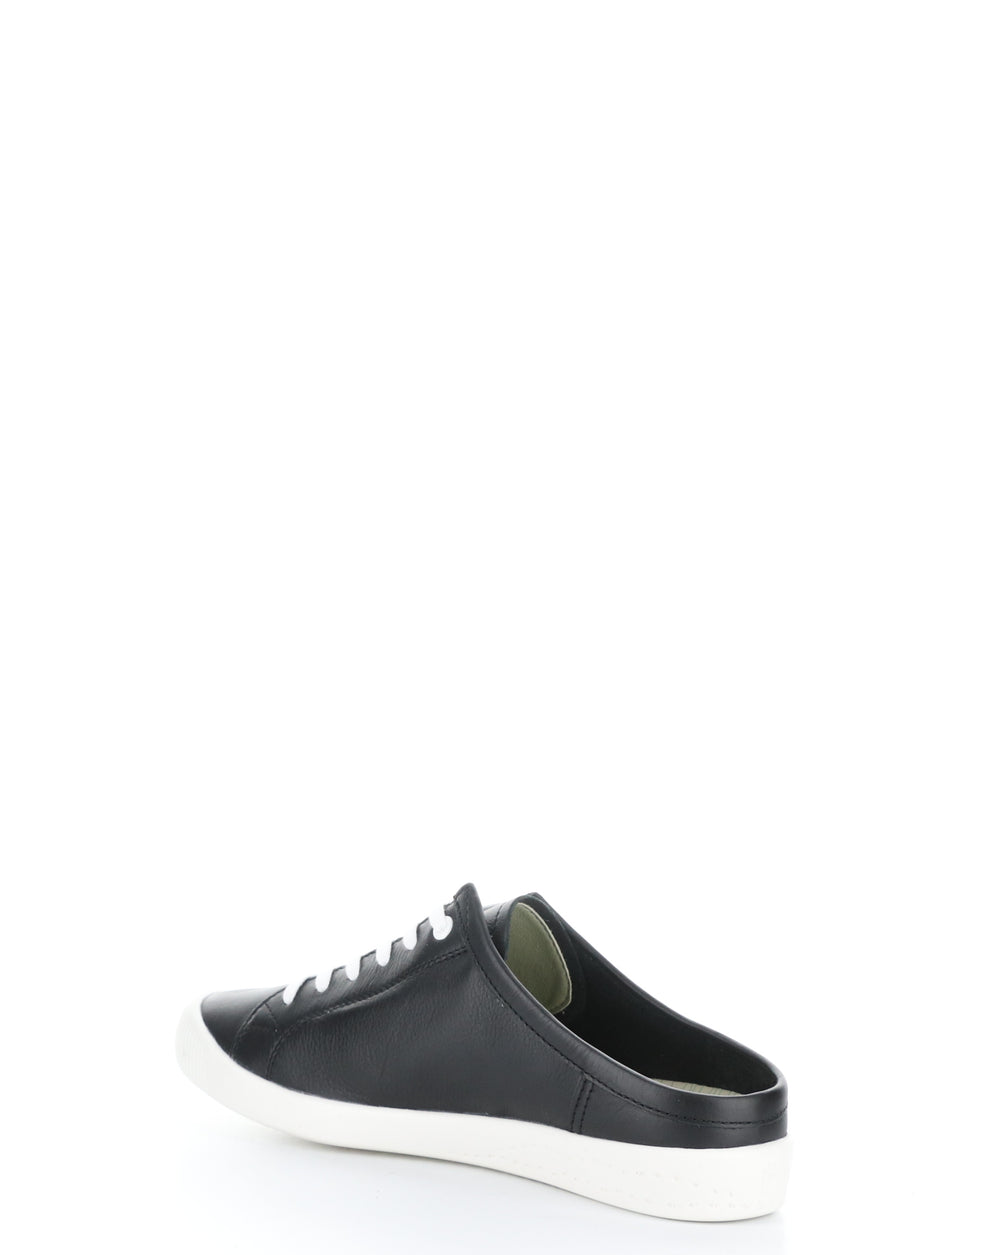 IDLE717SOF 001 BLACK Slip-on Shoes